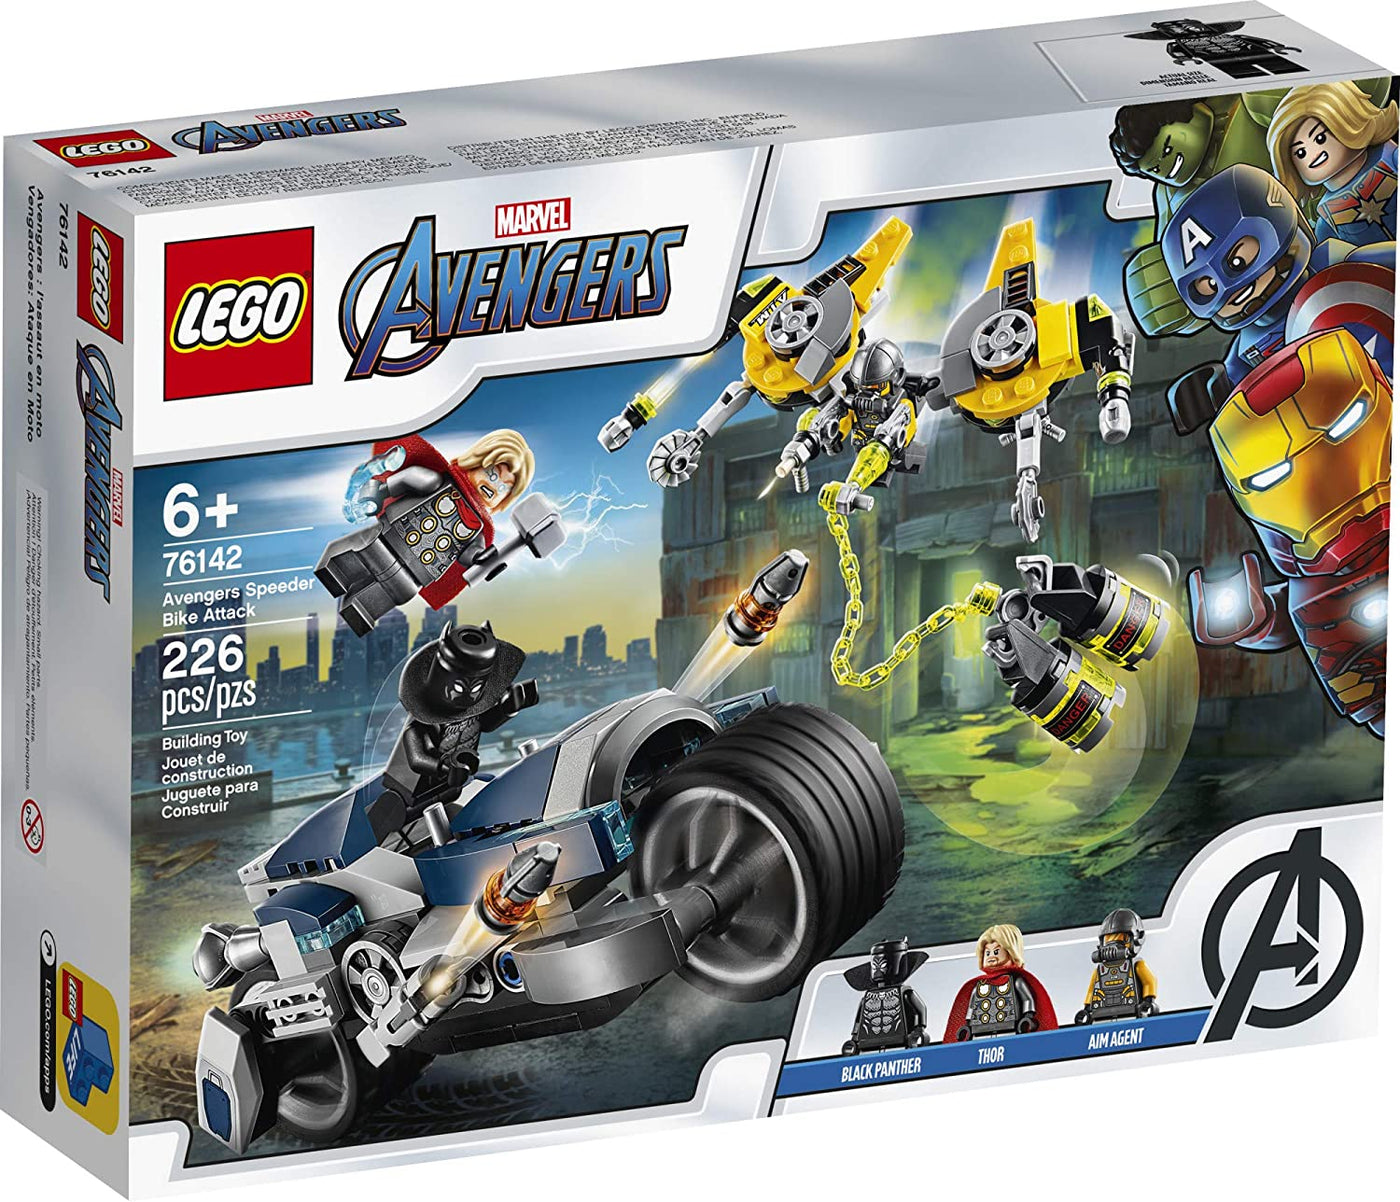 Speeder Bike Attack, 76142 | LEGO® Marvel™ Avengers